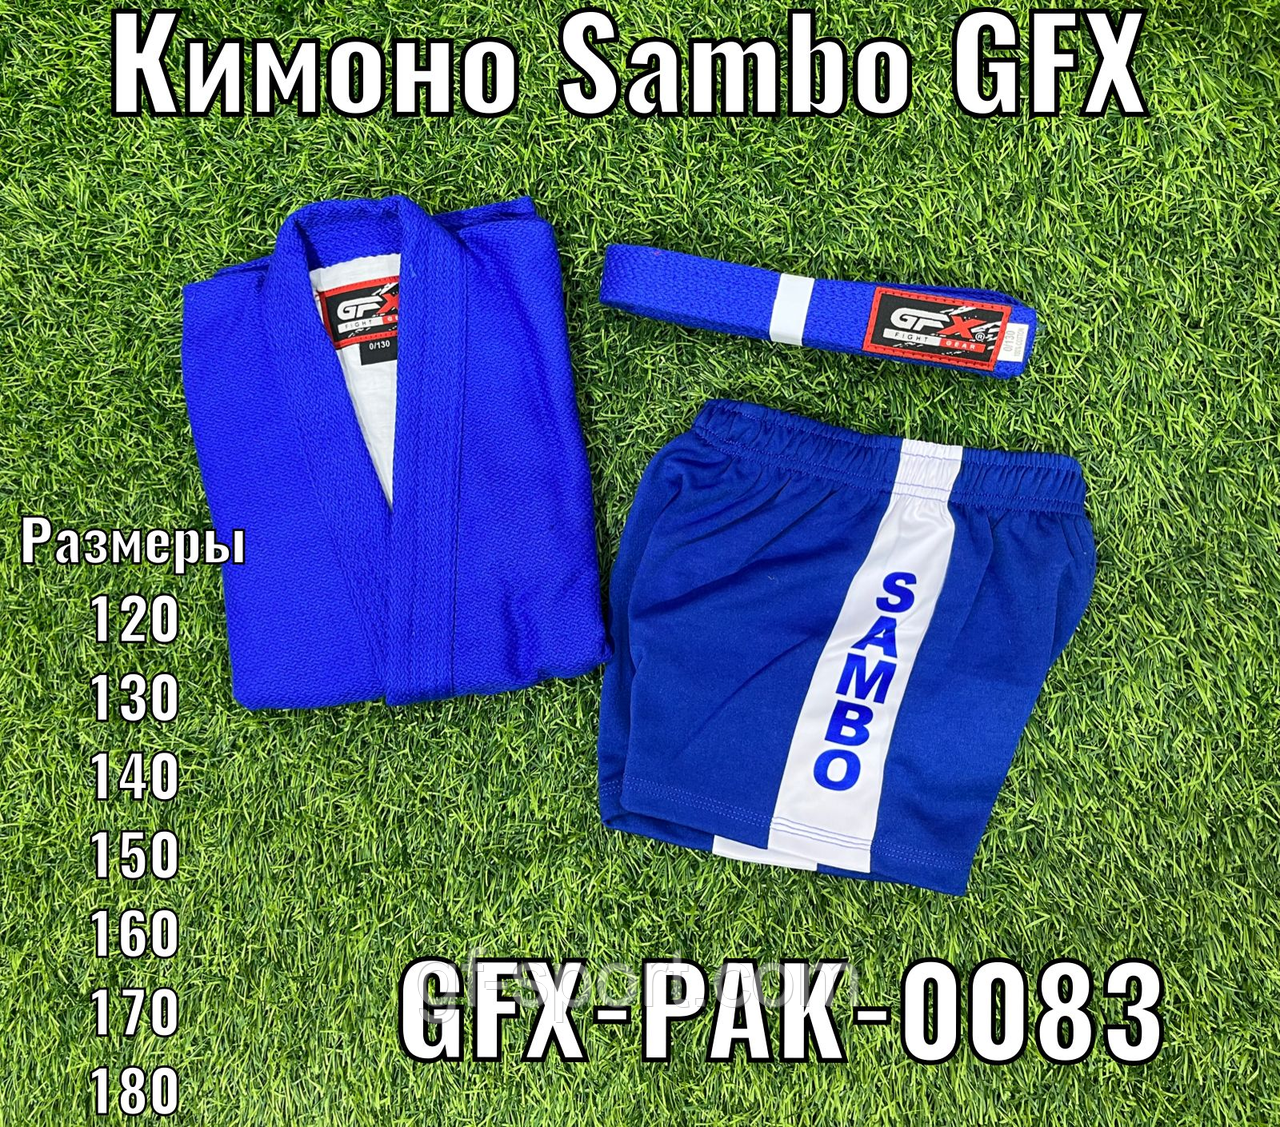 КИМОНО САМБО GFX-PAK-0083